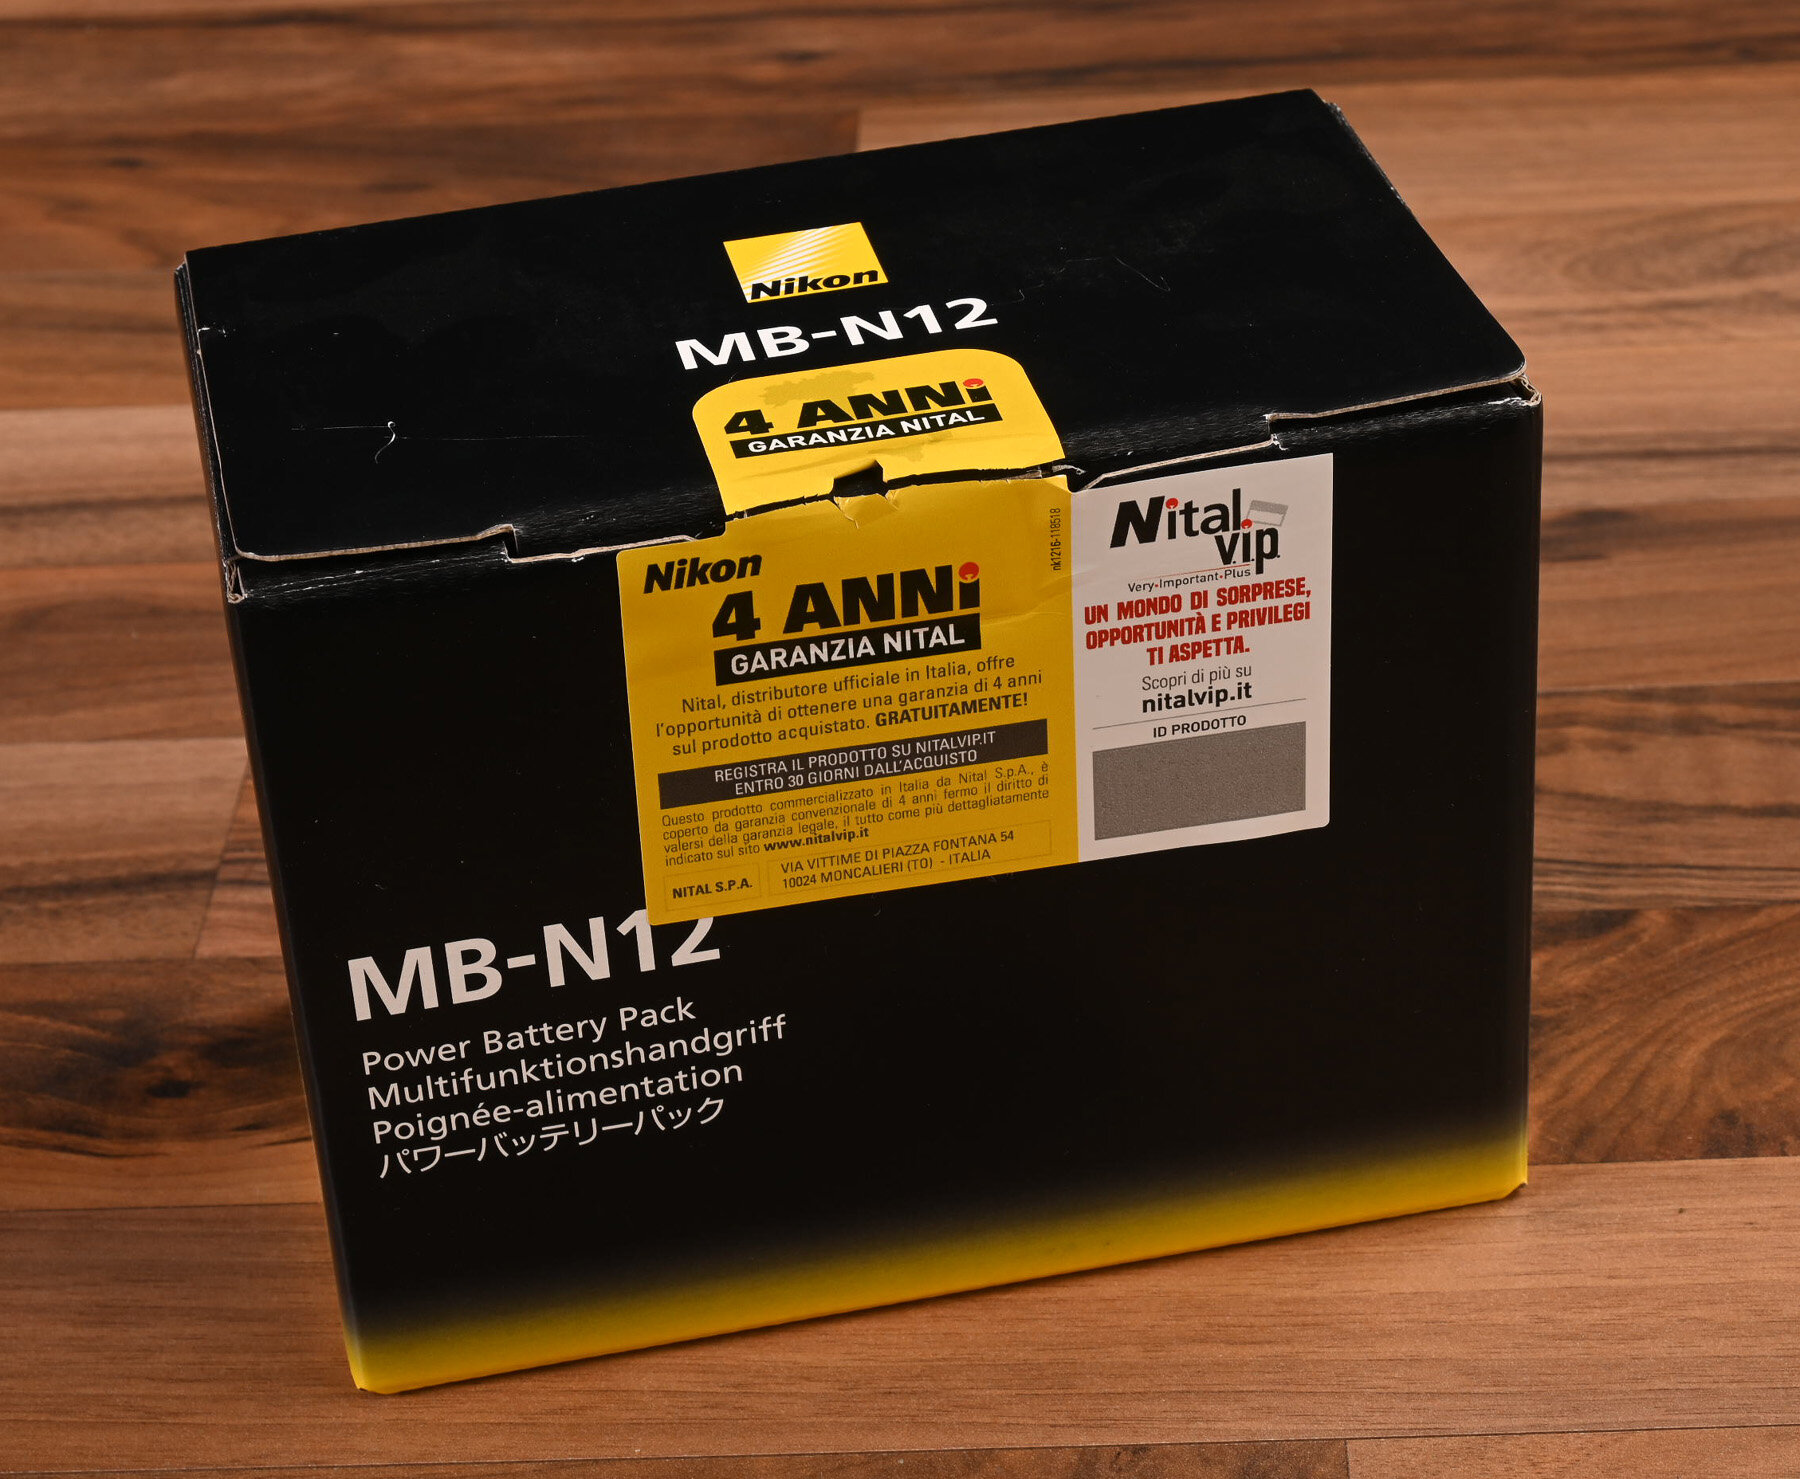 More information about "Nikon MB-N12 : il battery grip per la Nikon Z8"